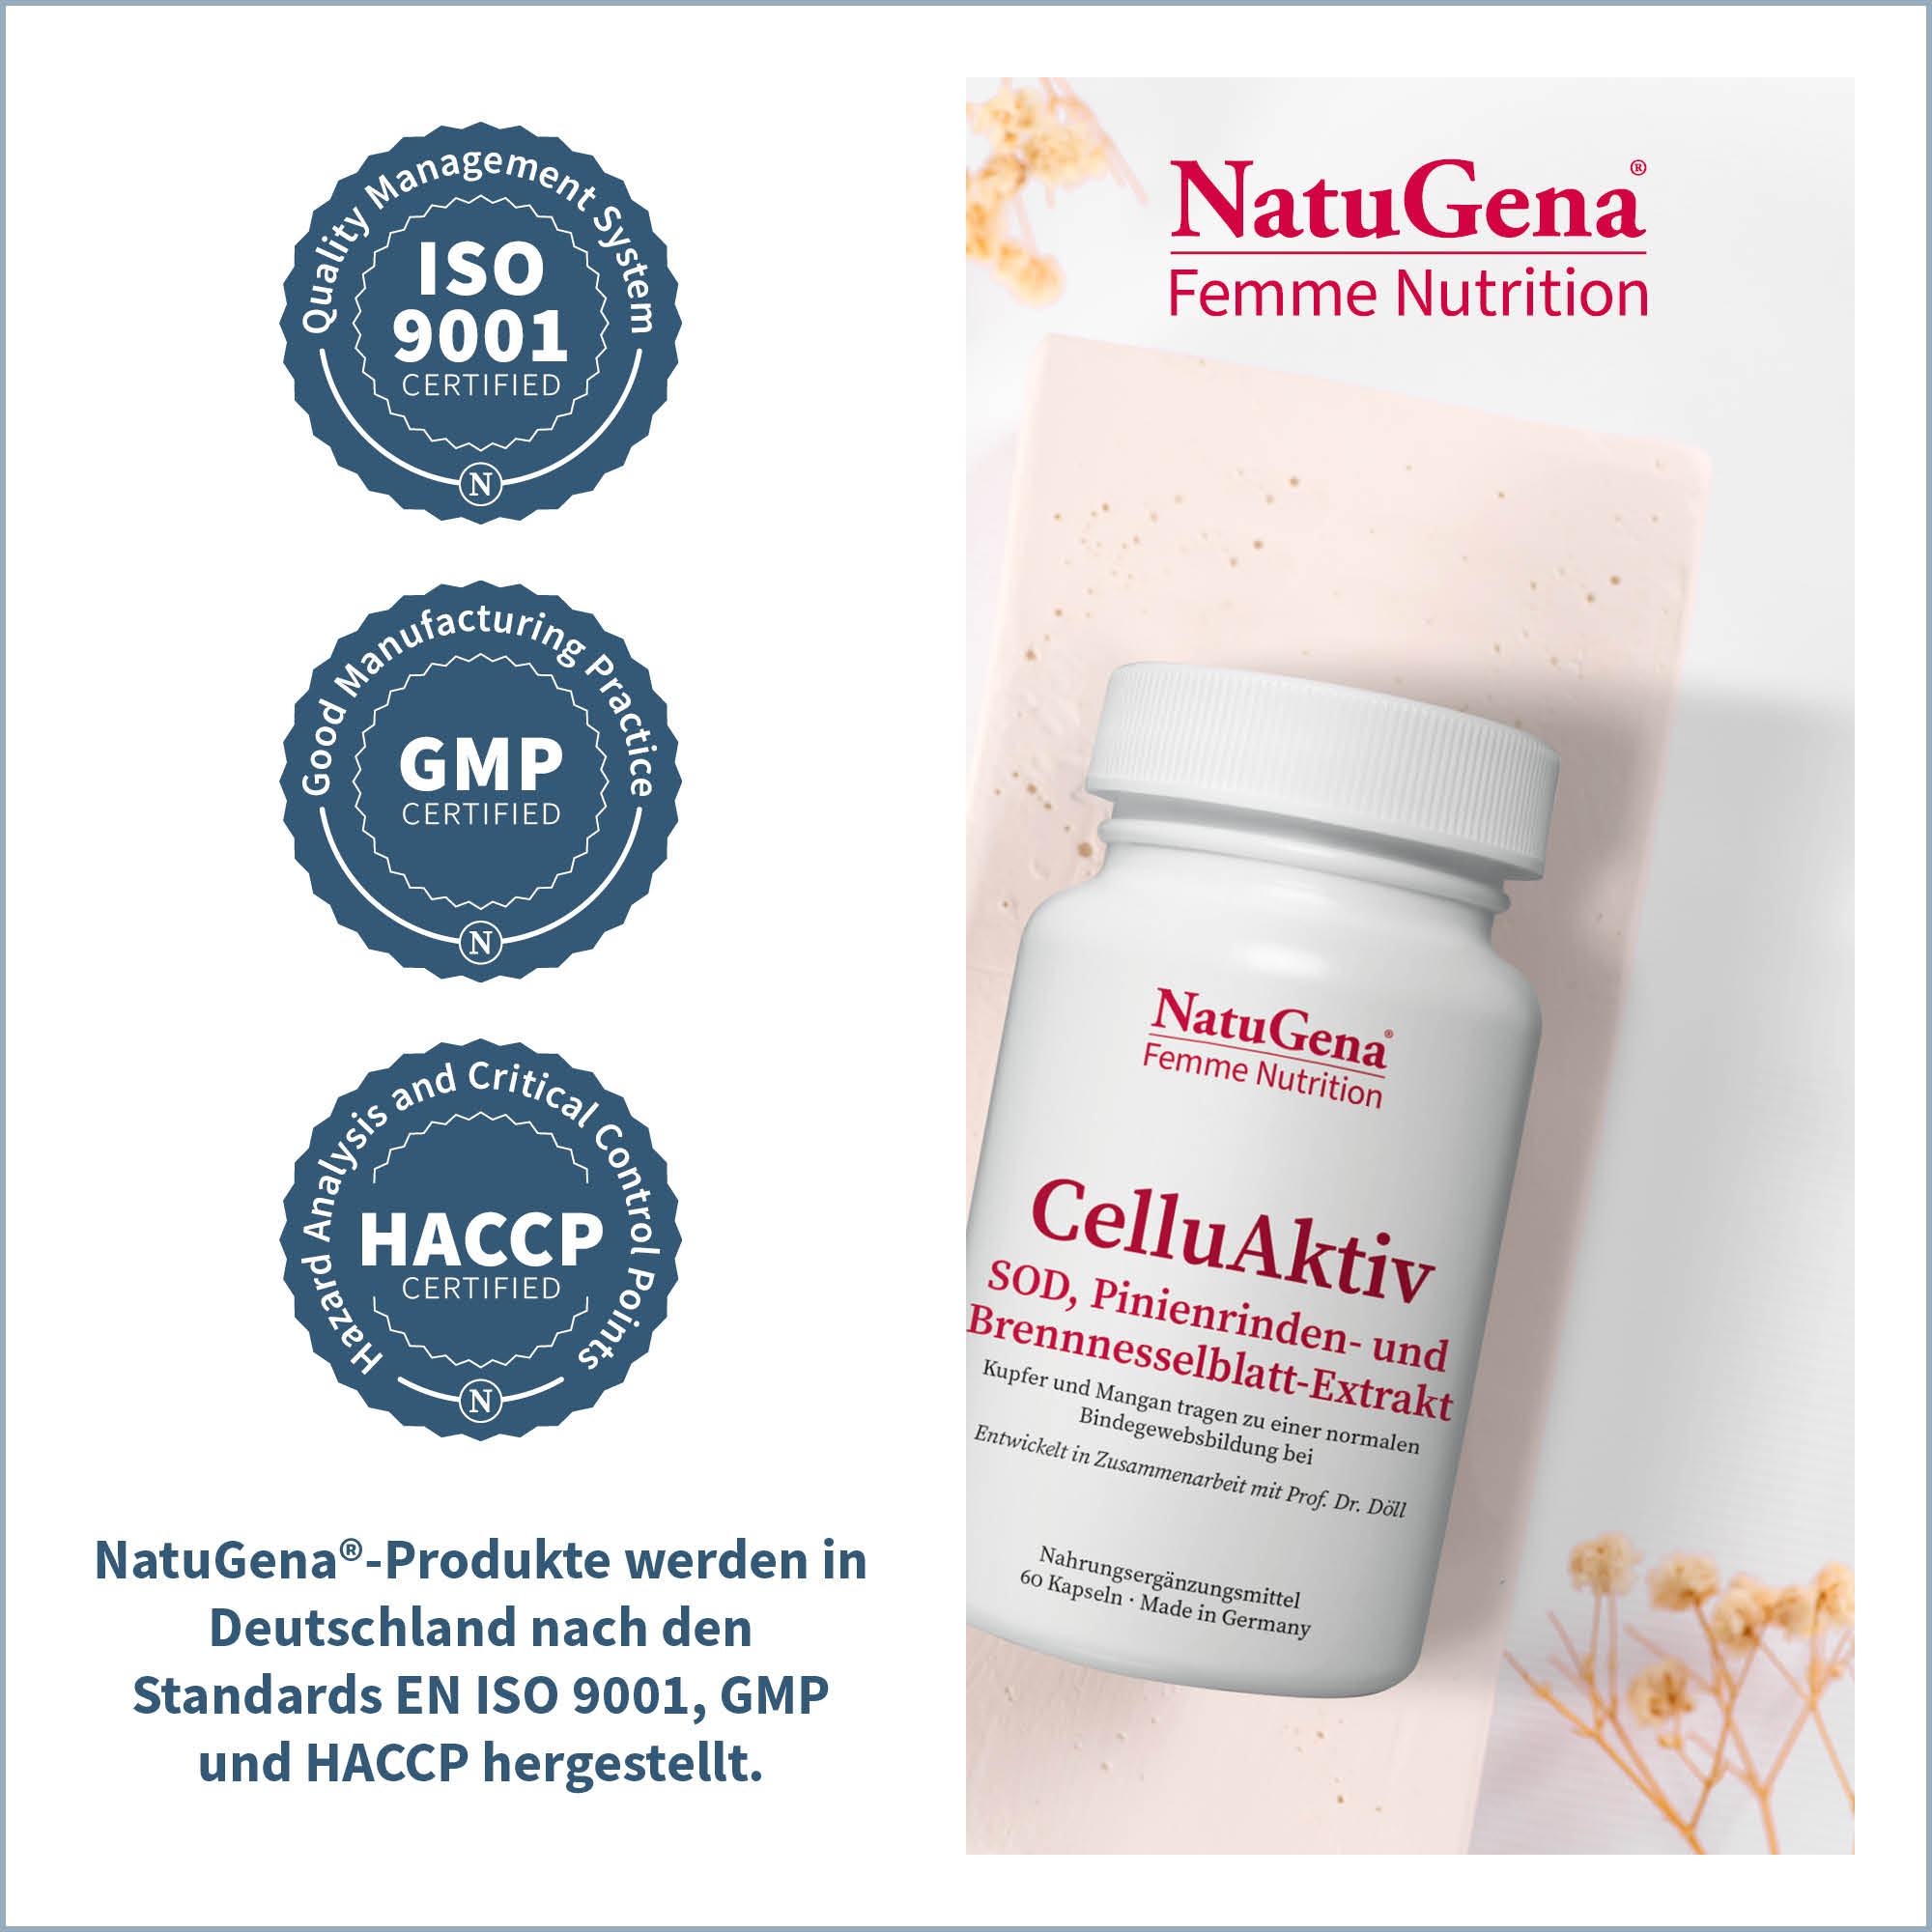 CelluAktiv von NatuGena Femme Nutrition - Zertifizierungen